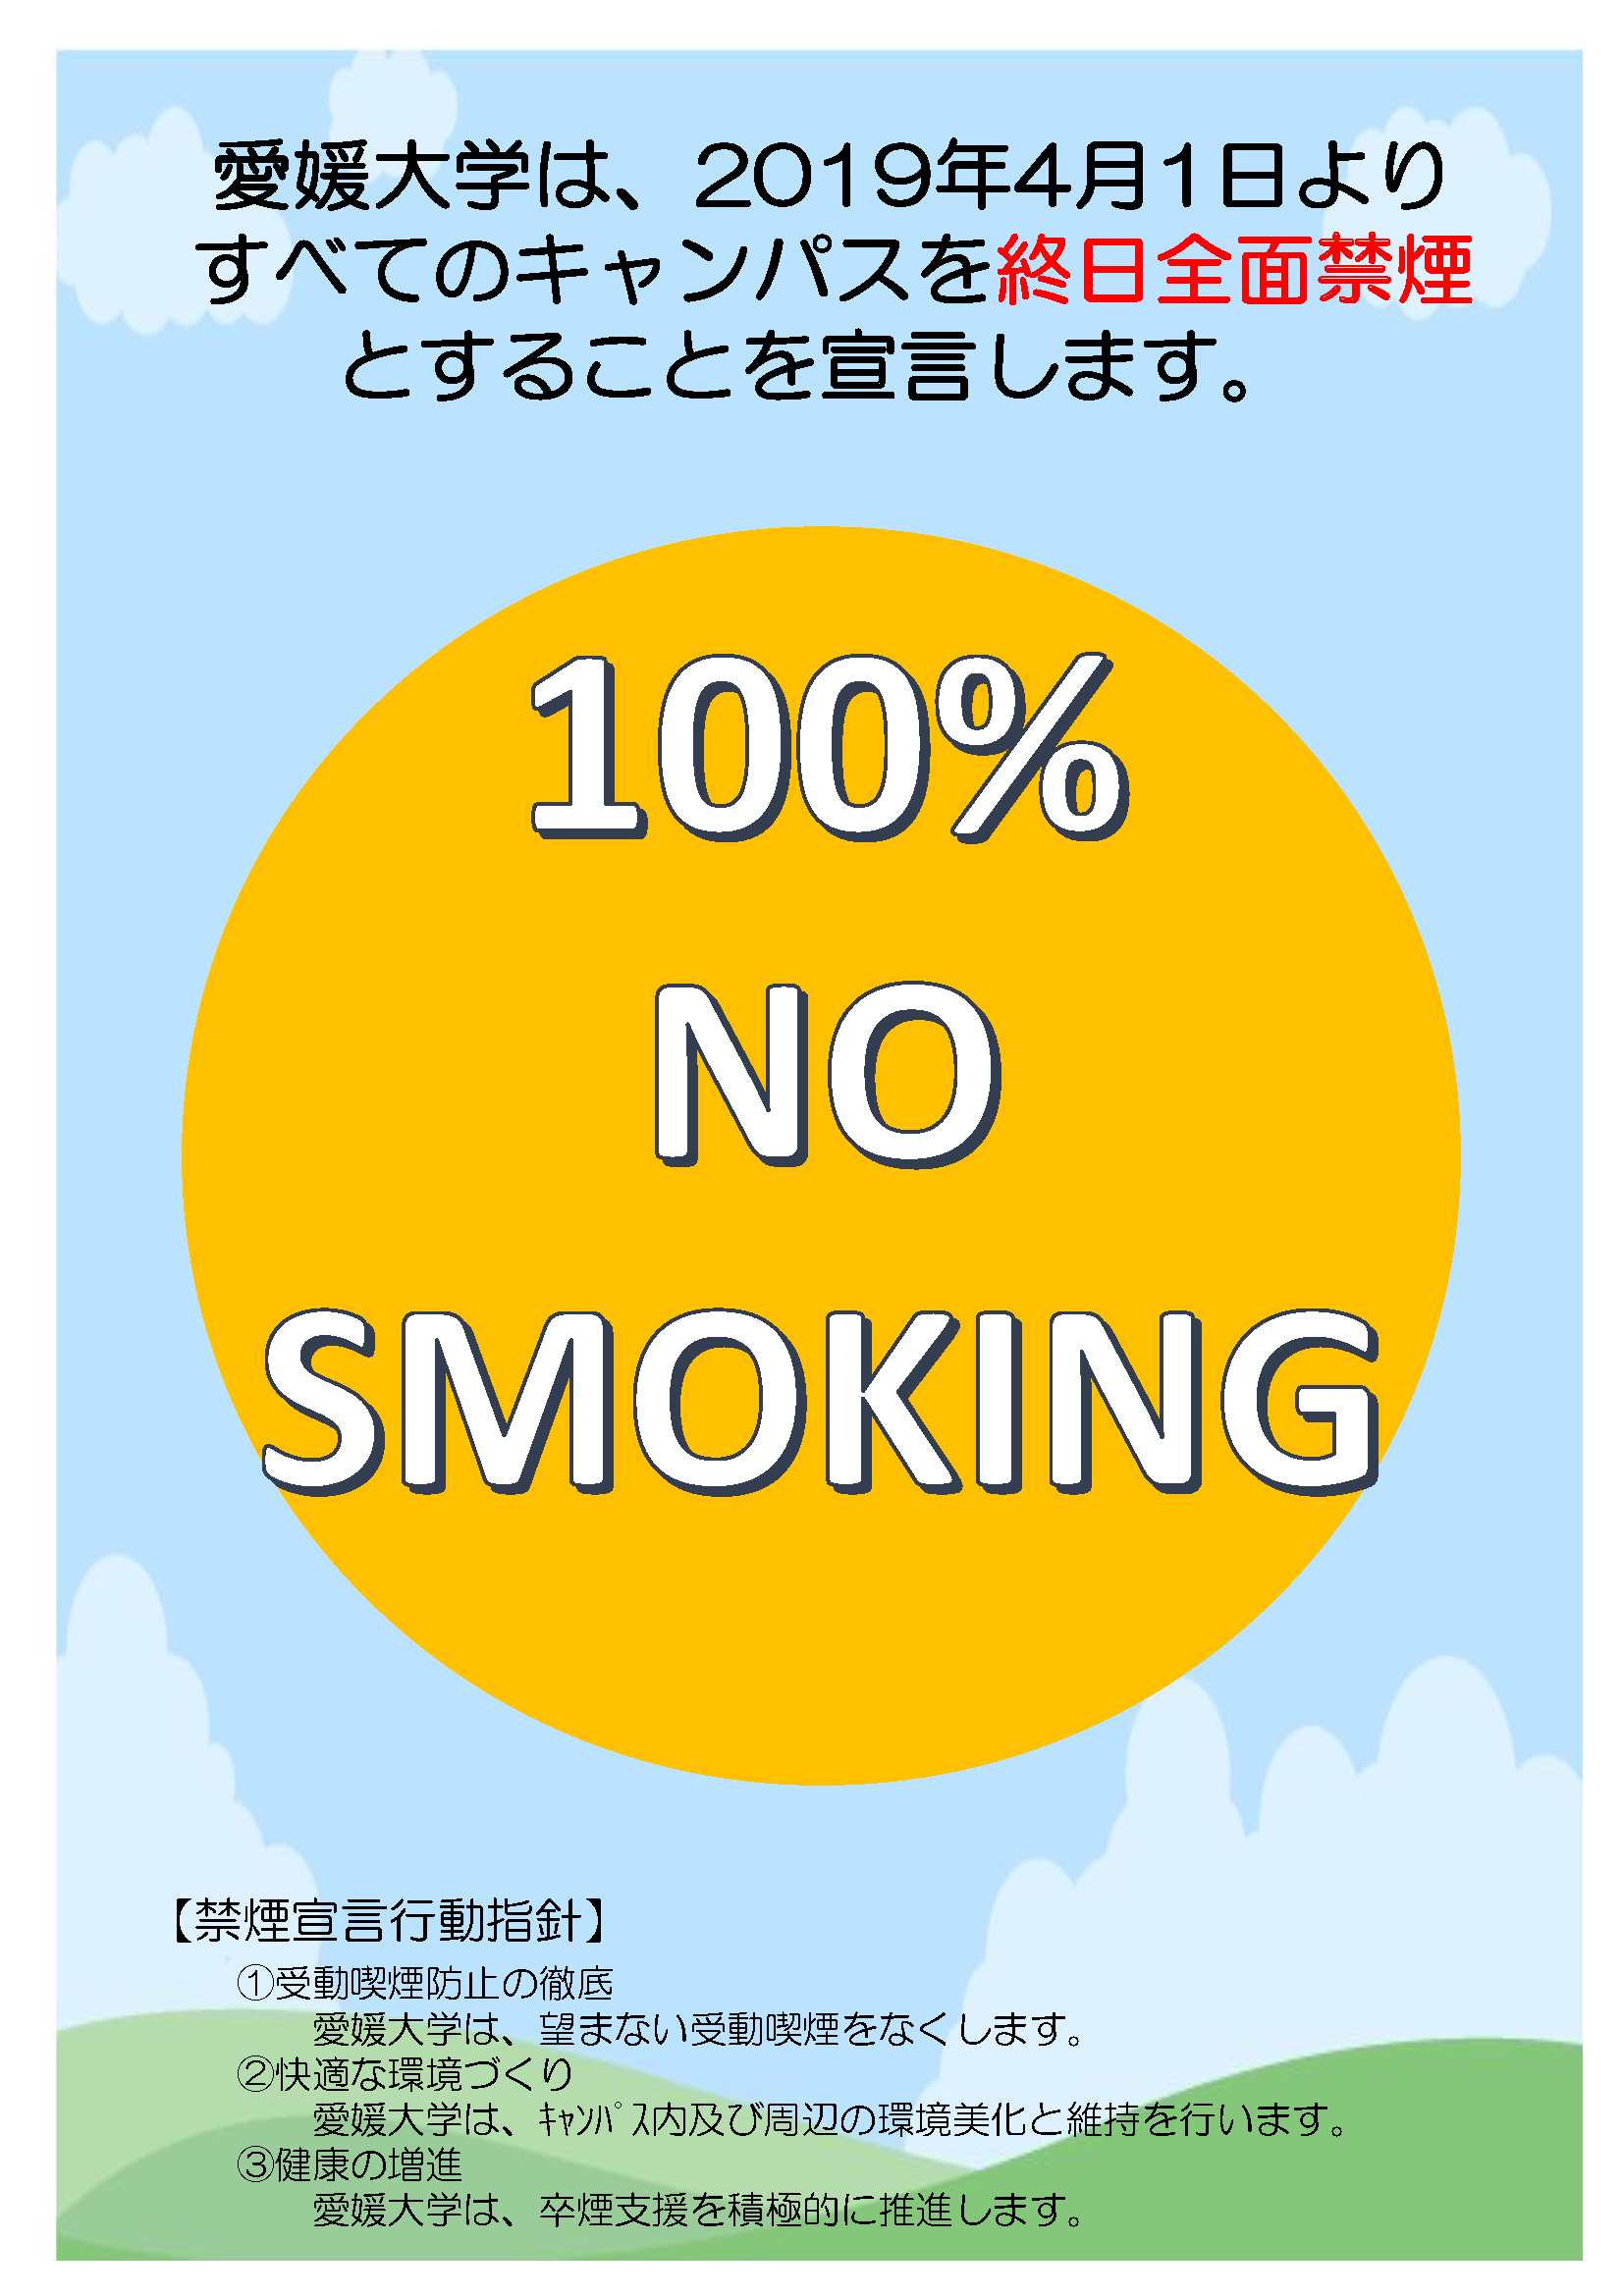 愛媛大学キャンパス全面禁煙宣言について 愛媛大学